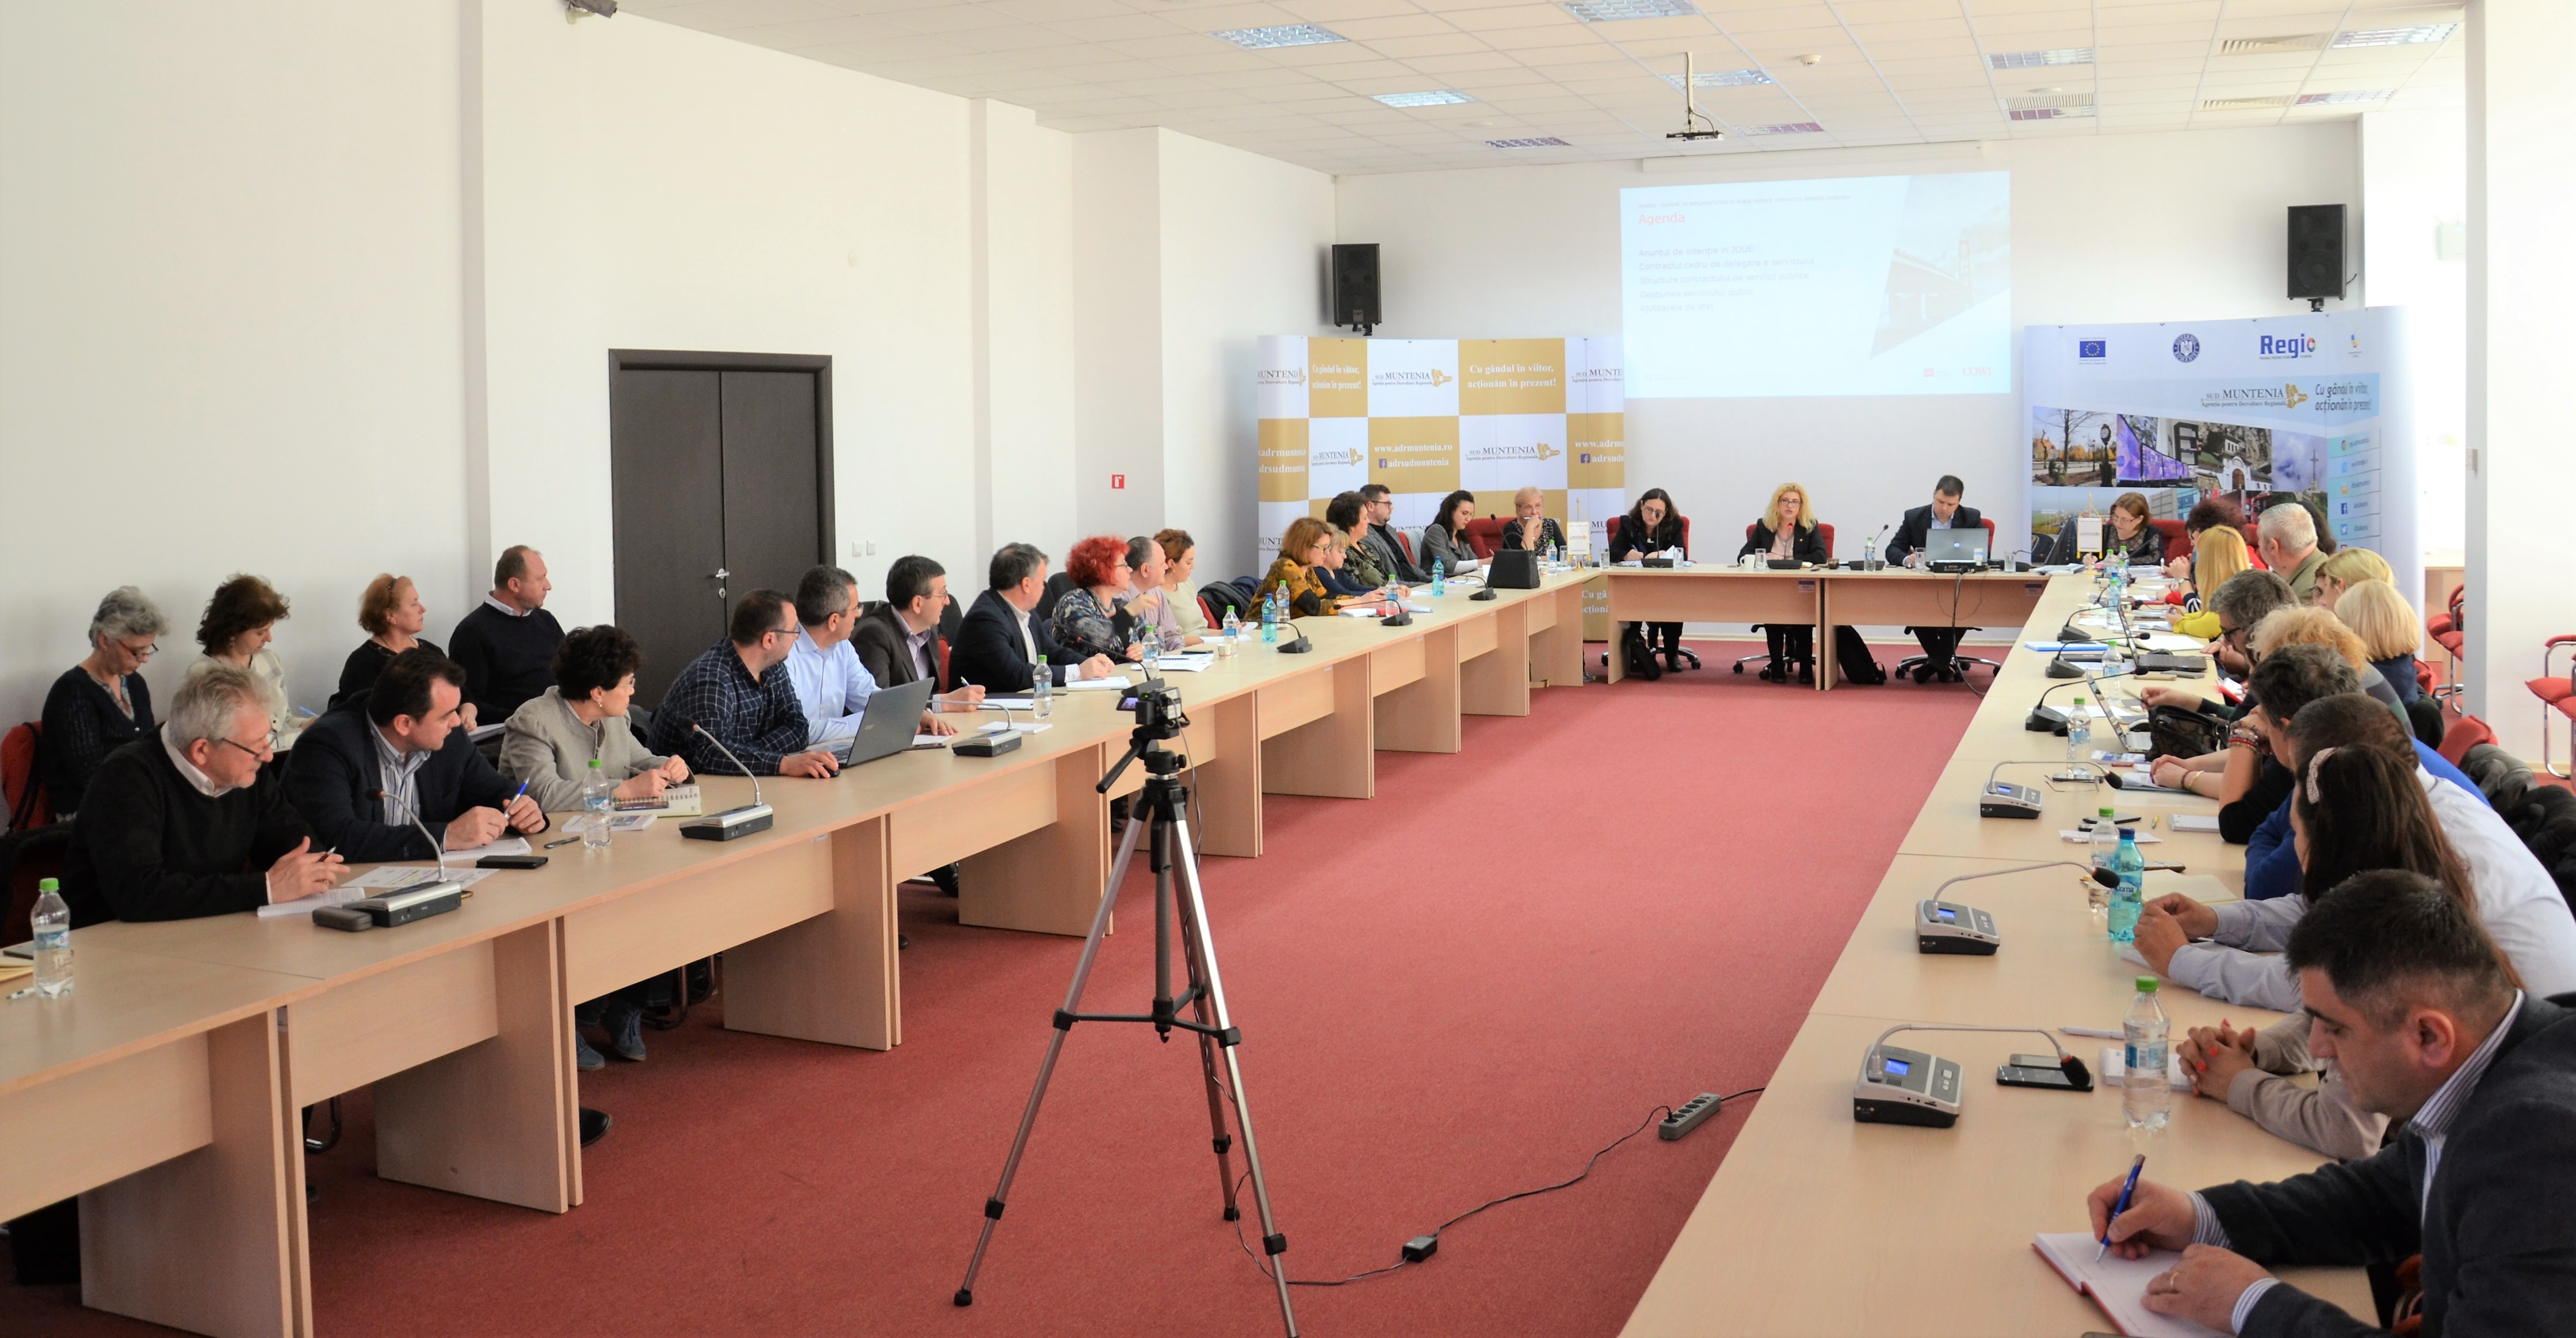 Întâlnire de lucru pentru pregătirea contractelor de servicii privind transportul public, organizată de ADR Sud Muntenia, cu sprijinul JASPERS